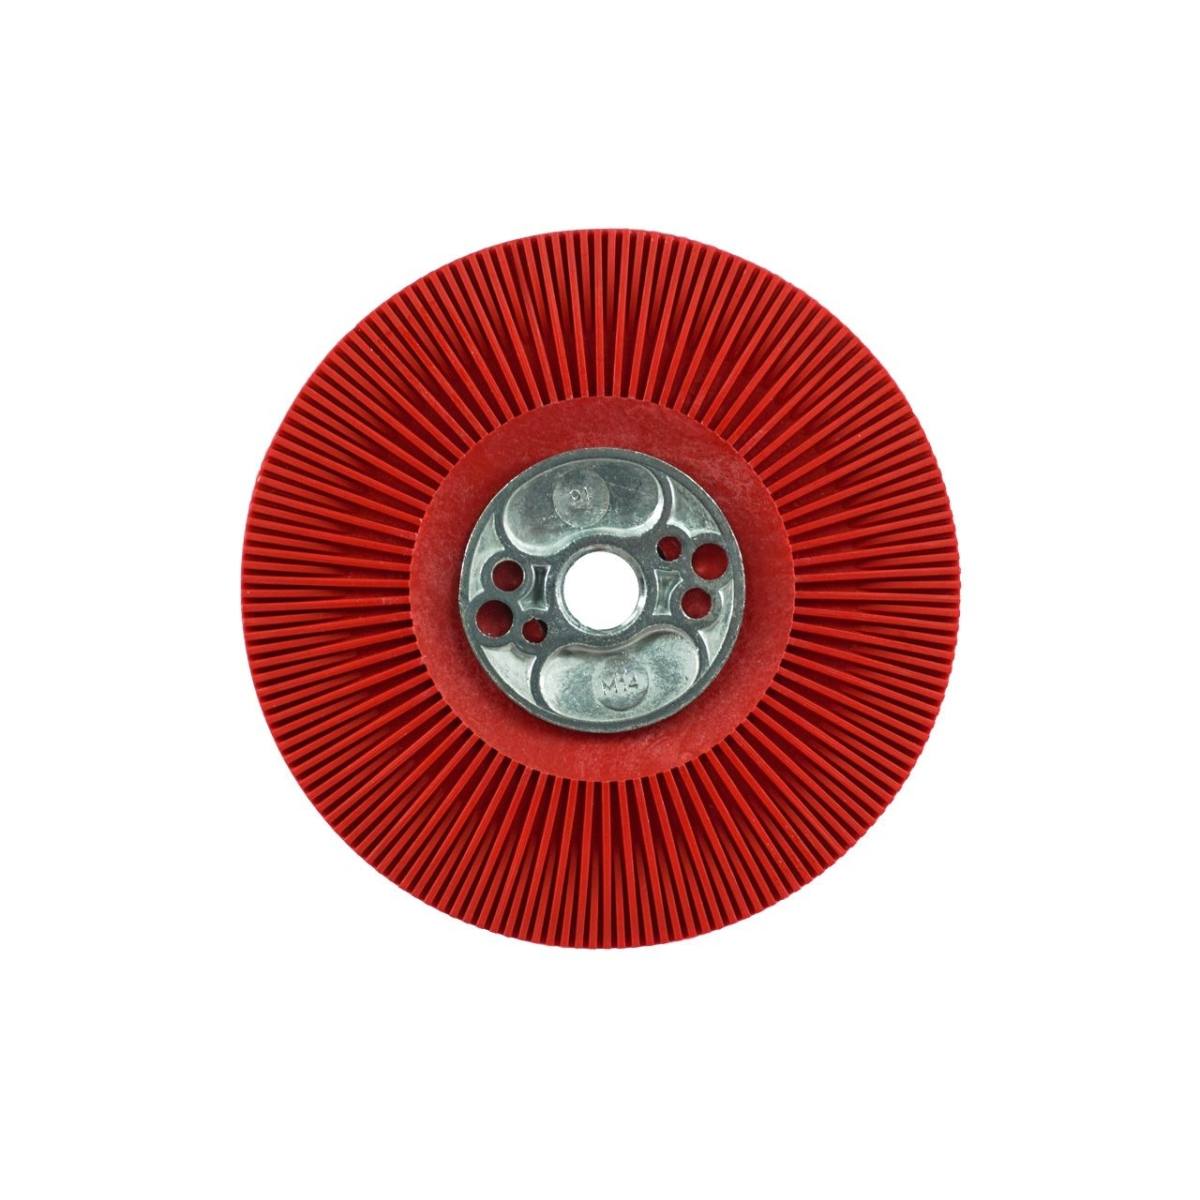 COLDSTEEL Plato soporte, 113 mm, rosca M14, para discos de fibra